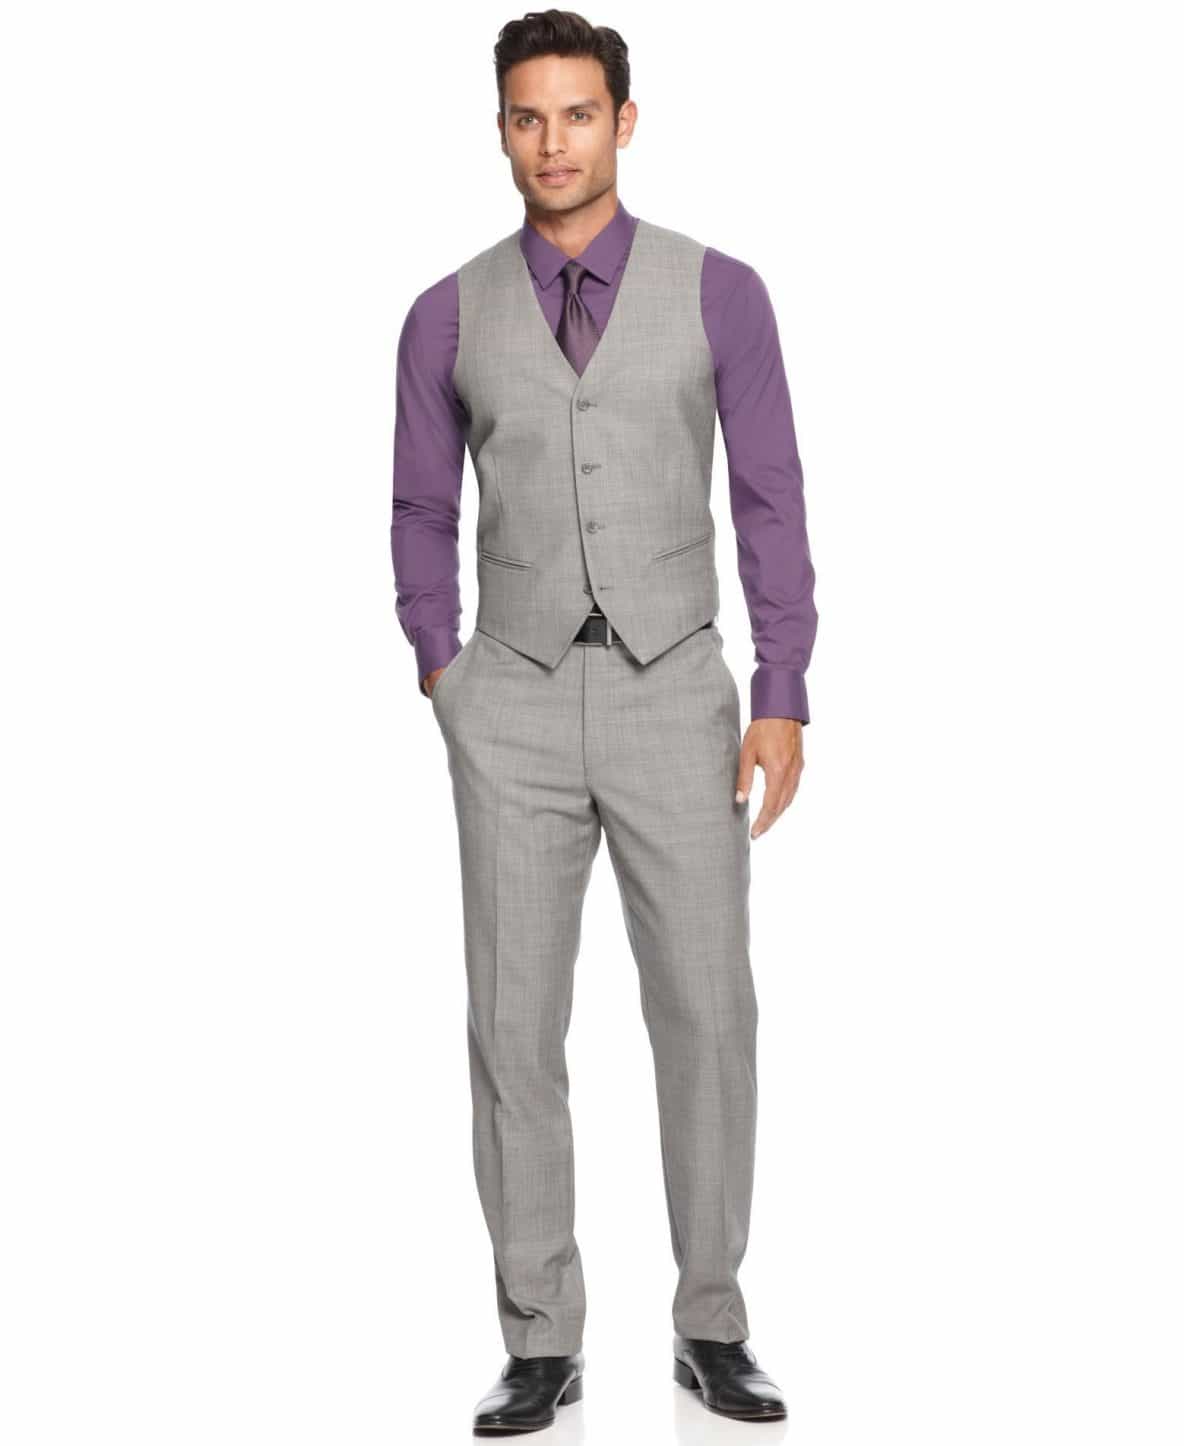 men’s spring suit colors, men’s light gray Alfani suit with purple ...